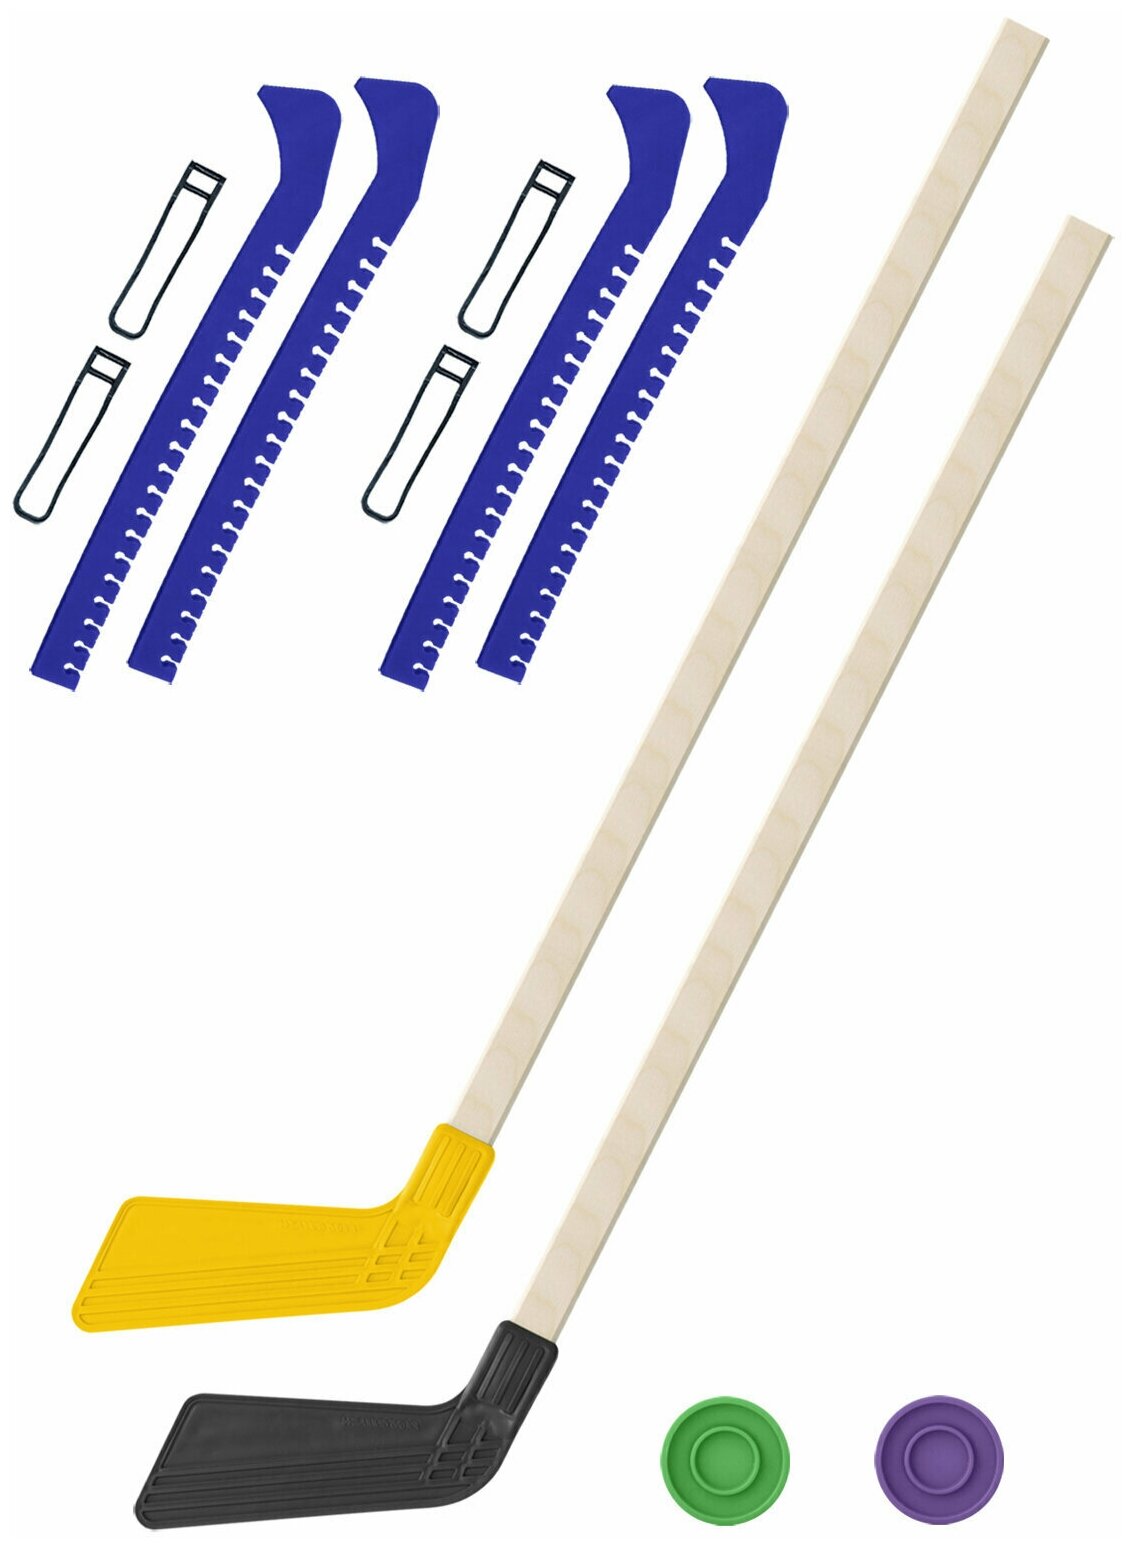 Детский хоккейный набор для игр на улице Клюшка хоккейная детская 2 шт жёлтая и чёрная 80 см. + 2 шайбы + Чехлы для коньков синие - 2 шт.